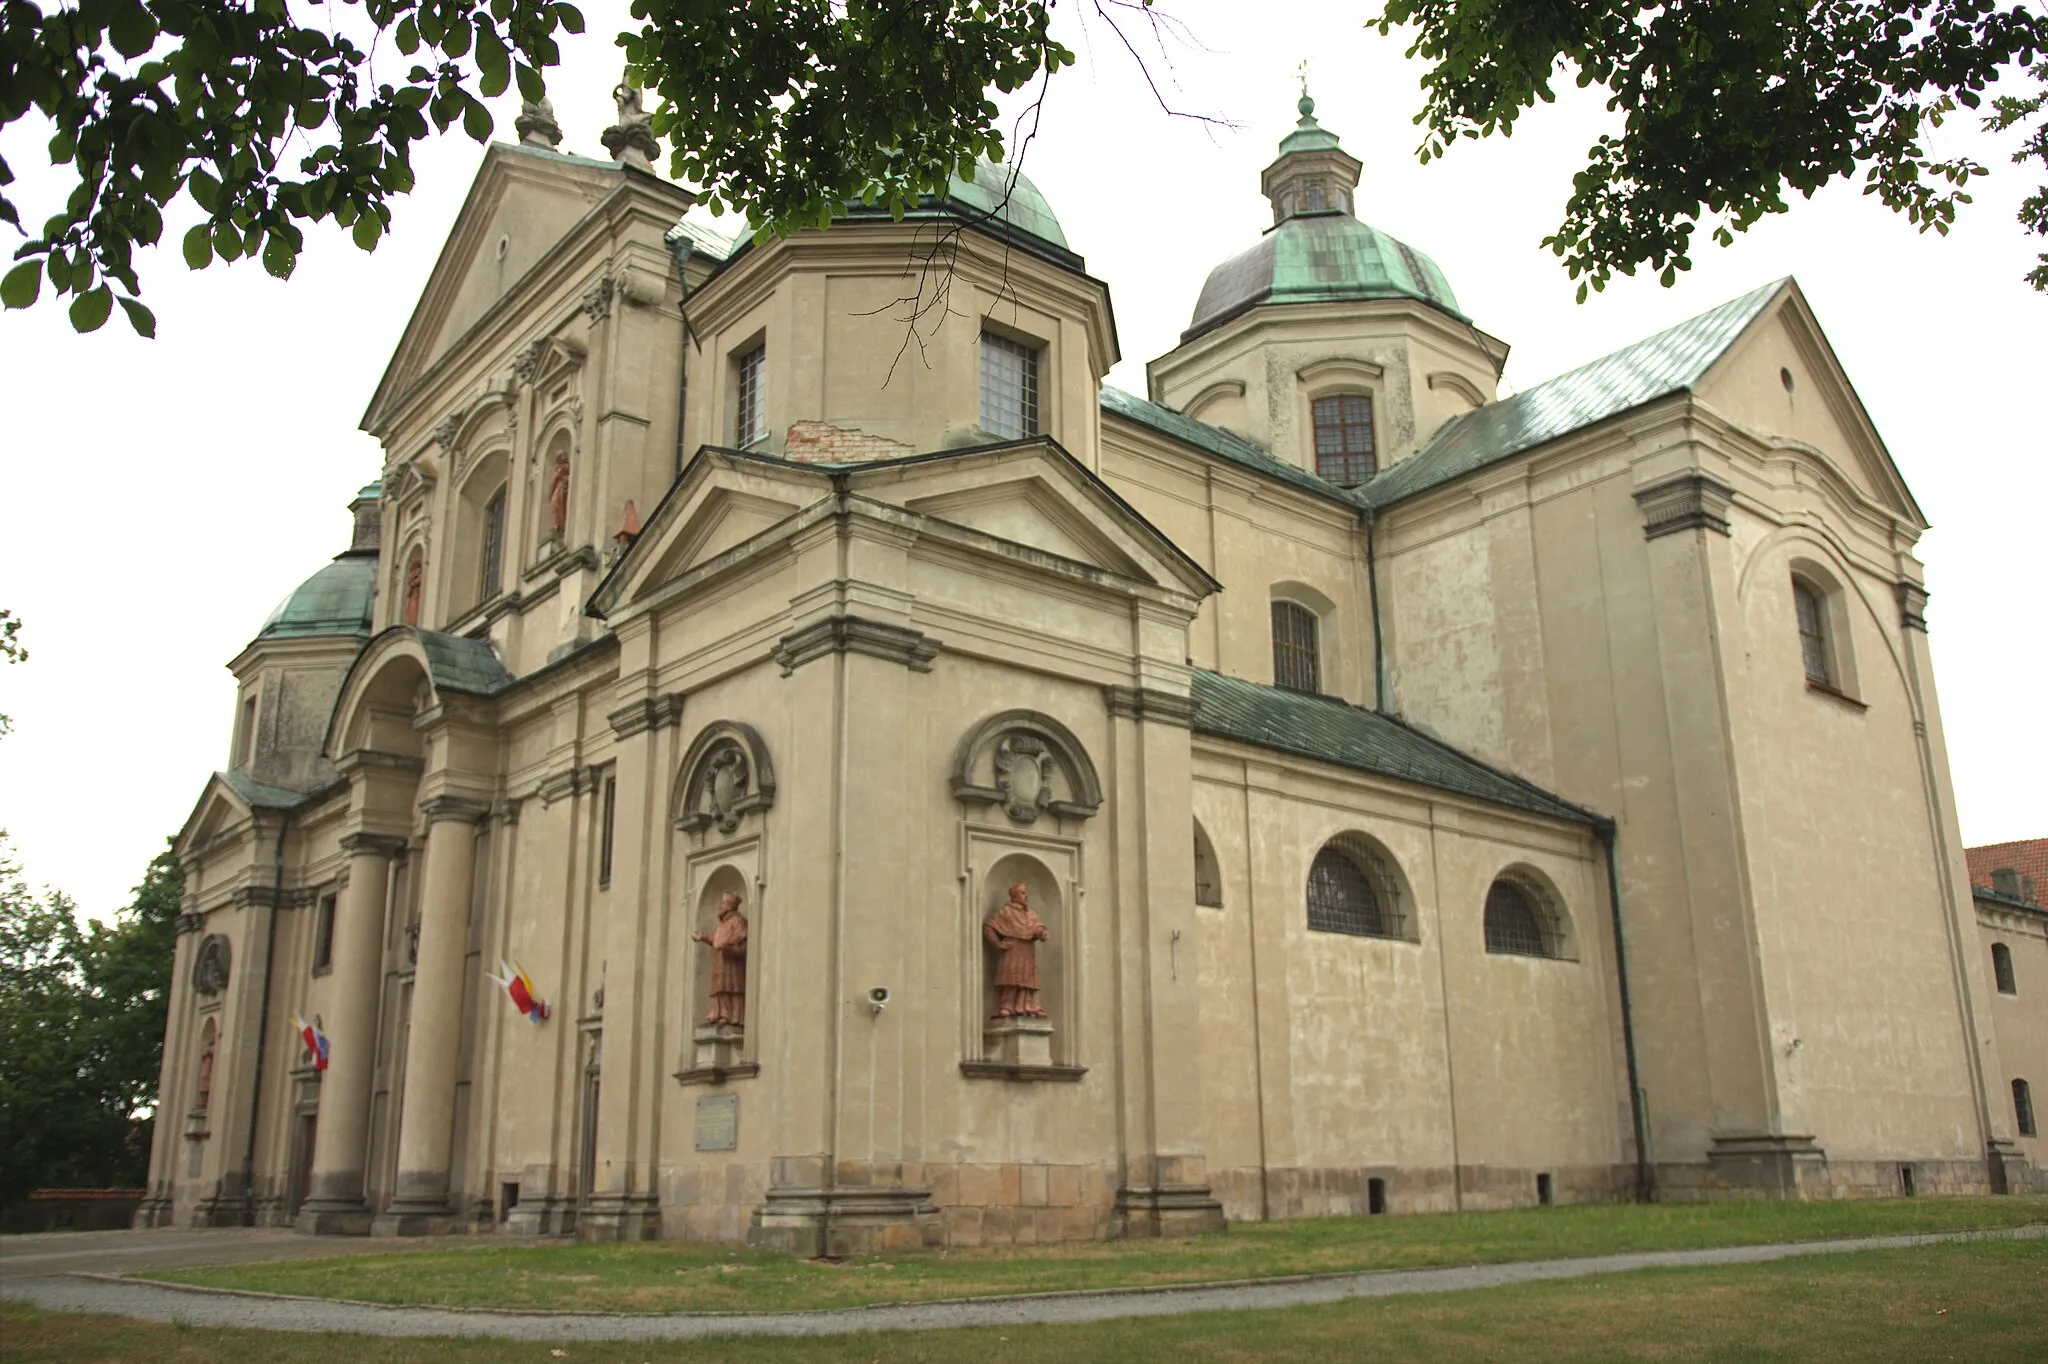 Photo showing: Bazylika św. Filipa Neri i św. Jana Chrzciciela w Studziannie – barokowy kościół wzniesiony został w latach 1688-1724 na planie krzyża. Jest to jeden z najpiękniejszych barokowych kościołów województwa łódzkiego.